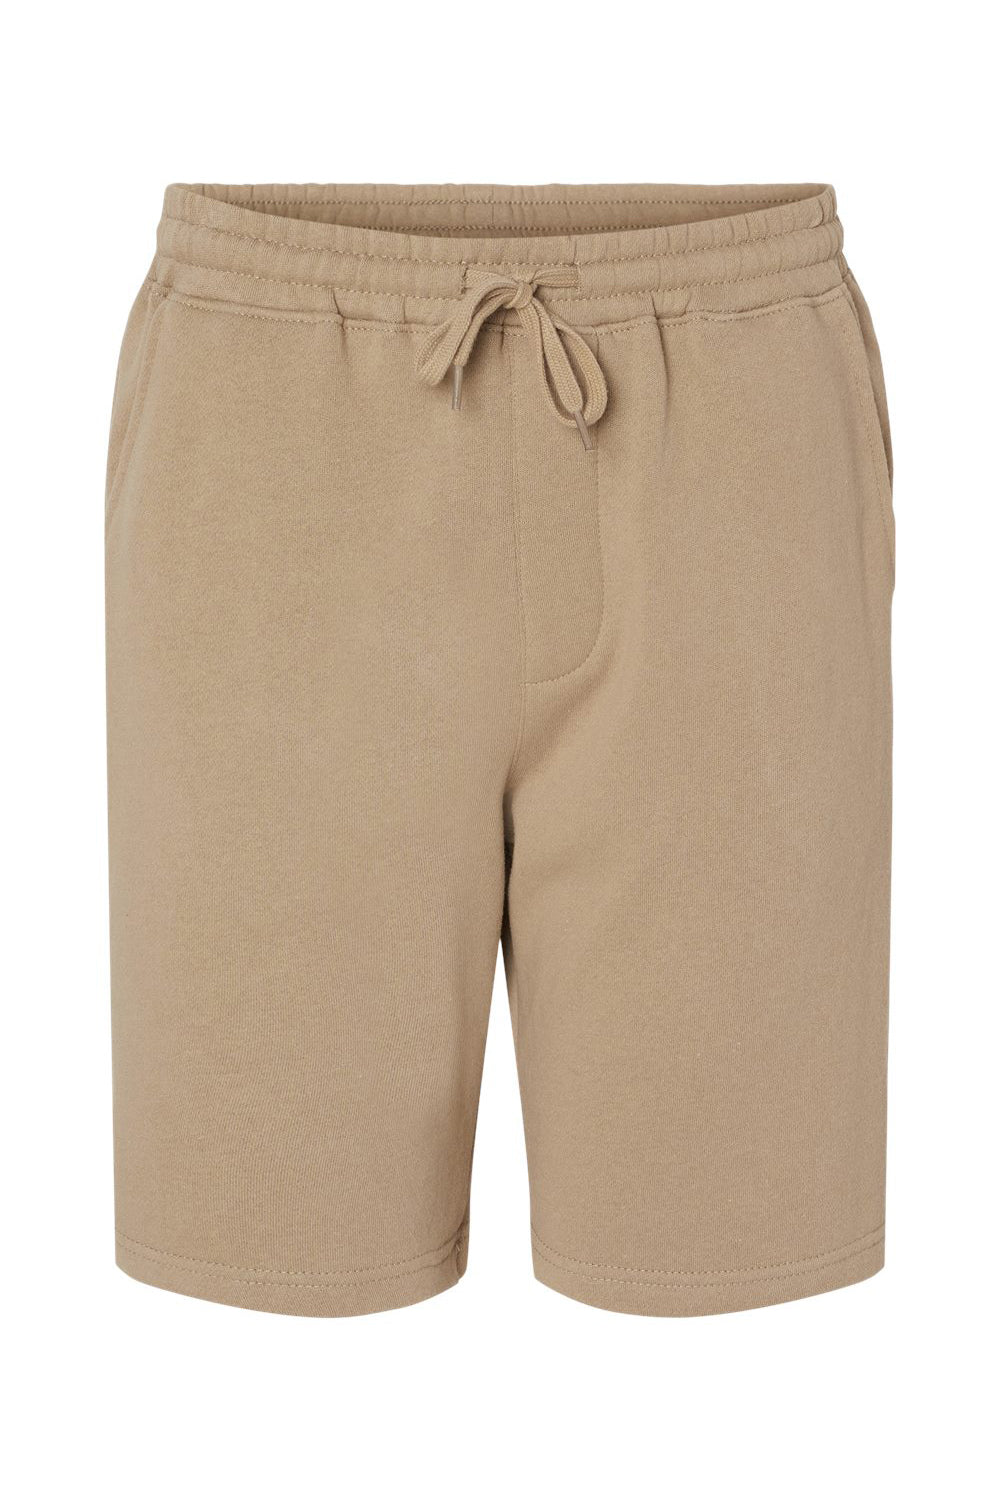 Independent Trading Co. IND20SRT Mens Fleece Shorts w/ Pockets Sandstone Brown Flat Front